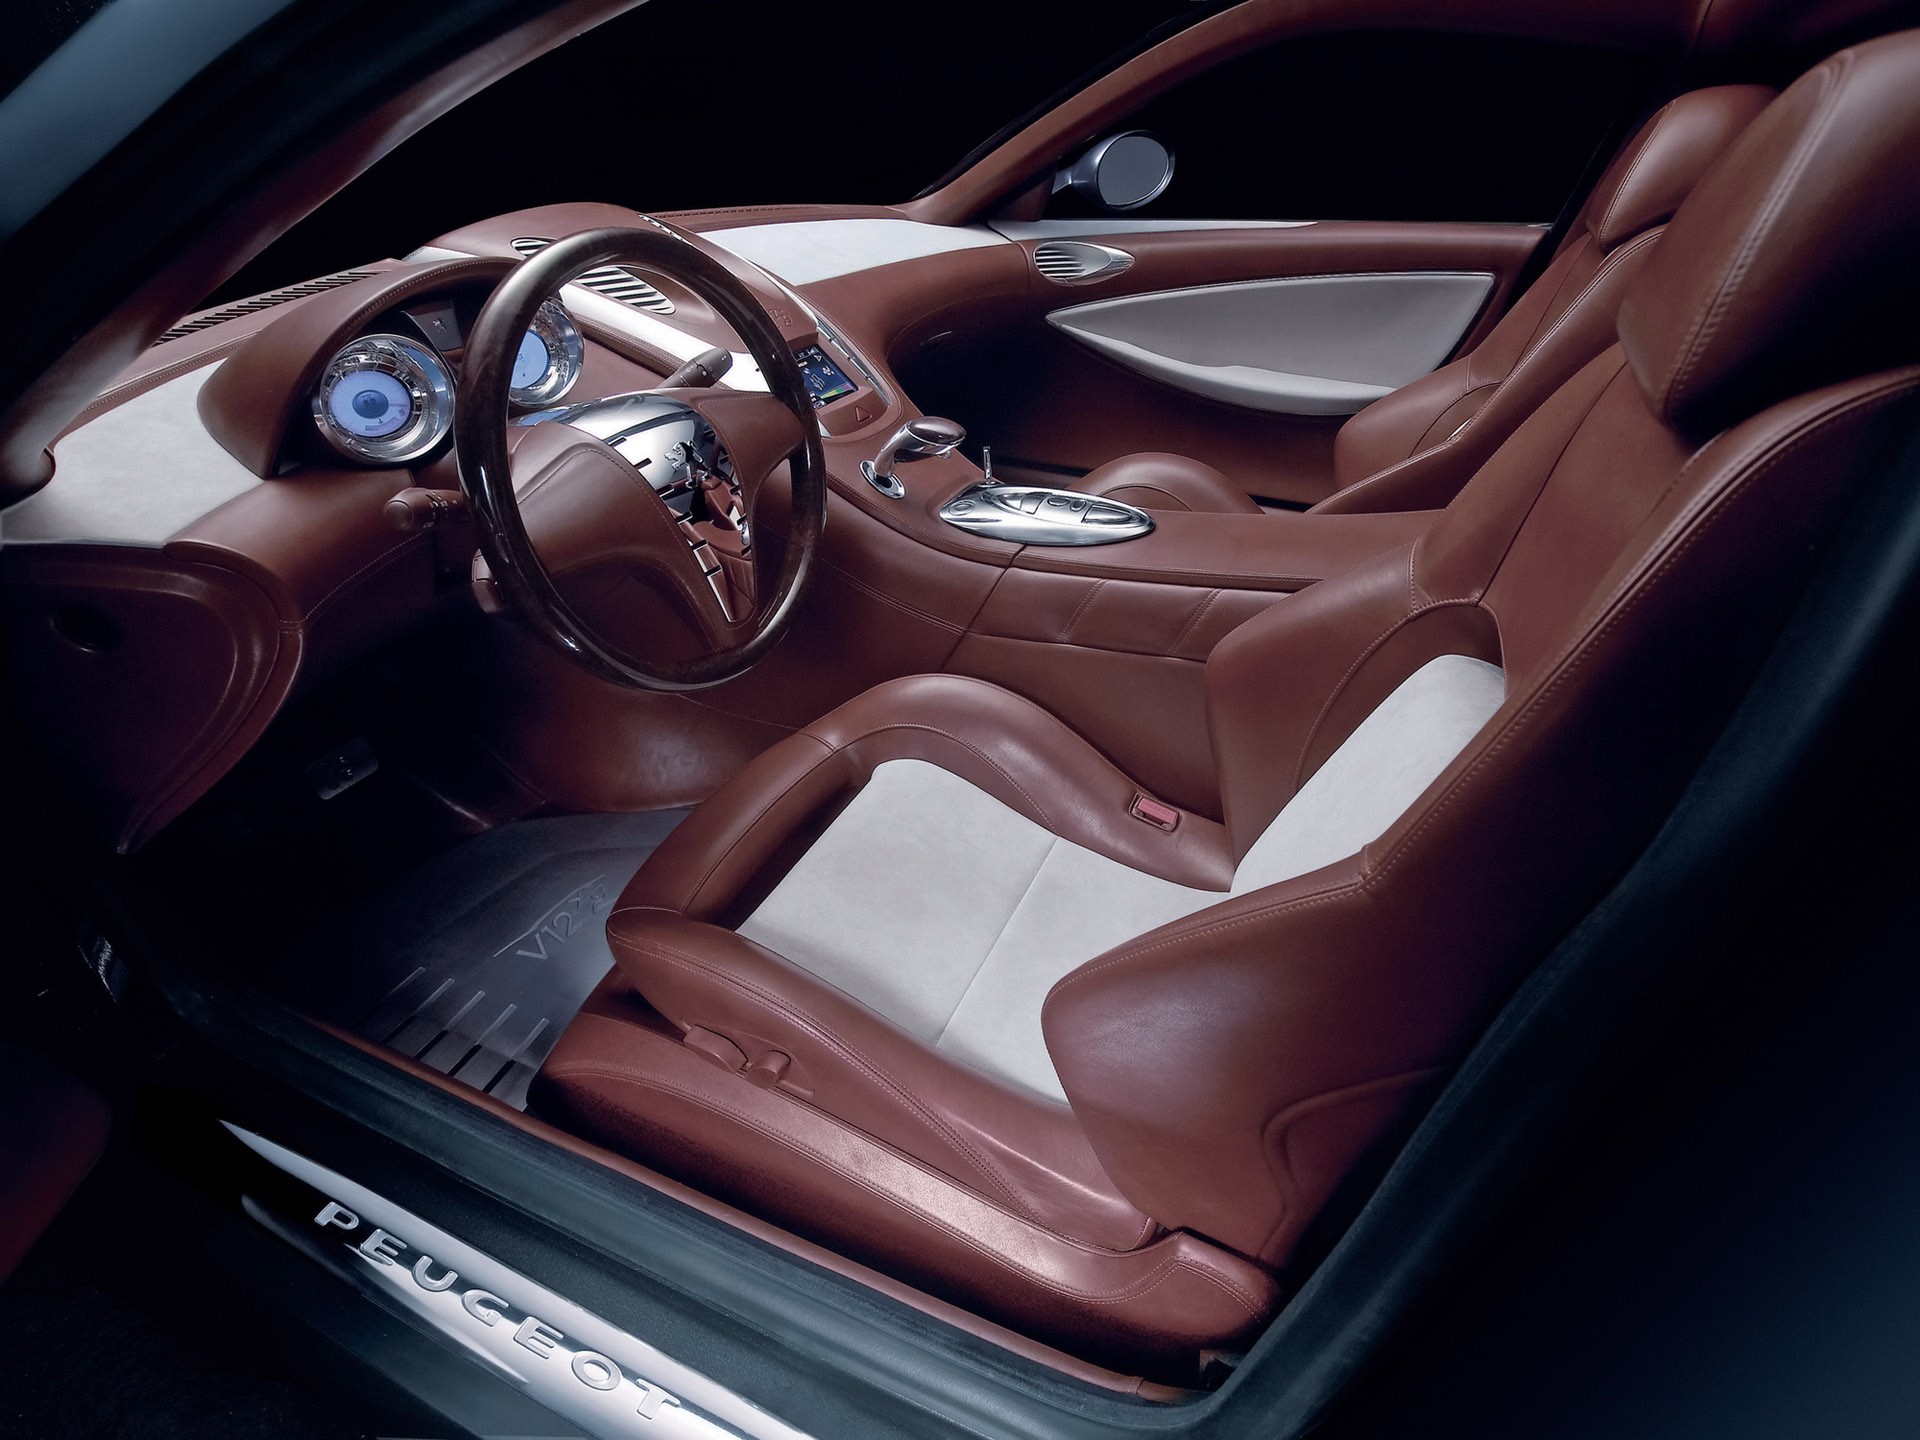 Peugeot, concept art, car interiors - desktop wallpaper